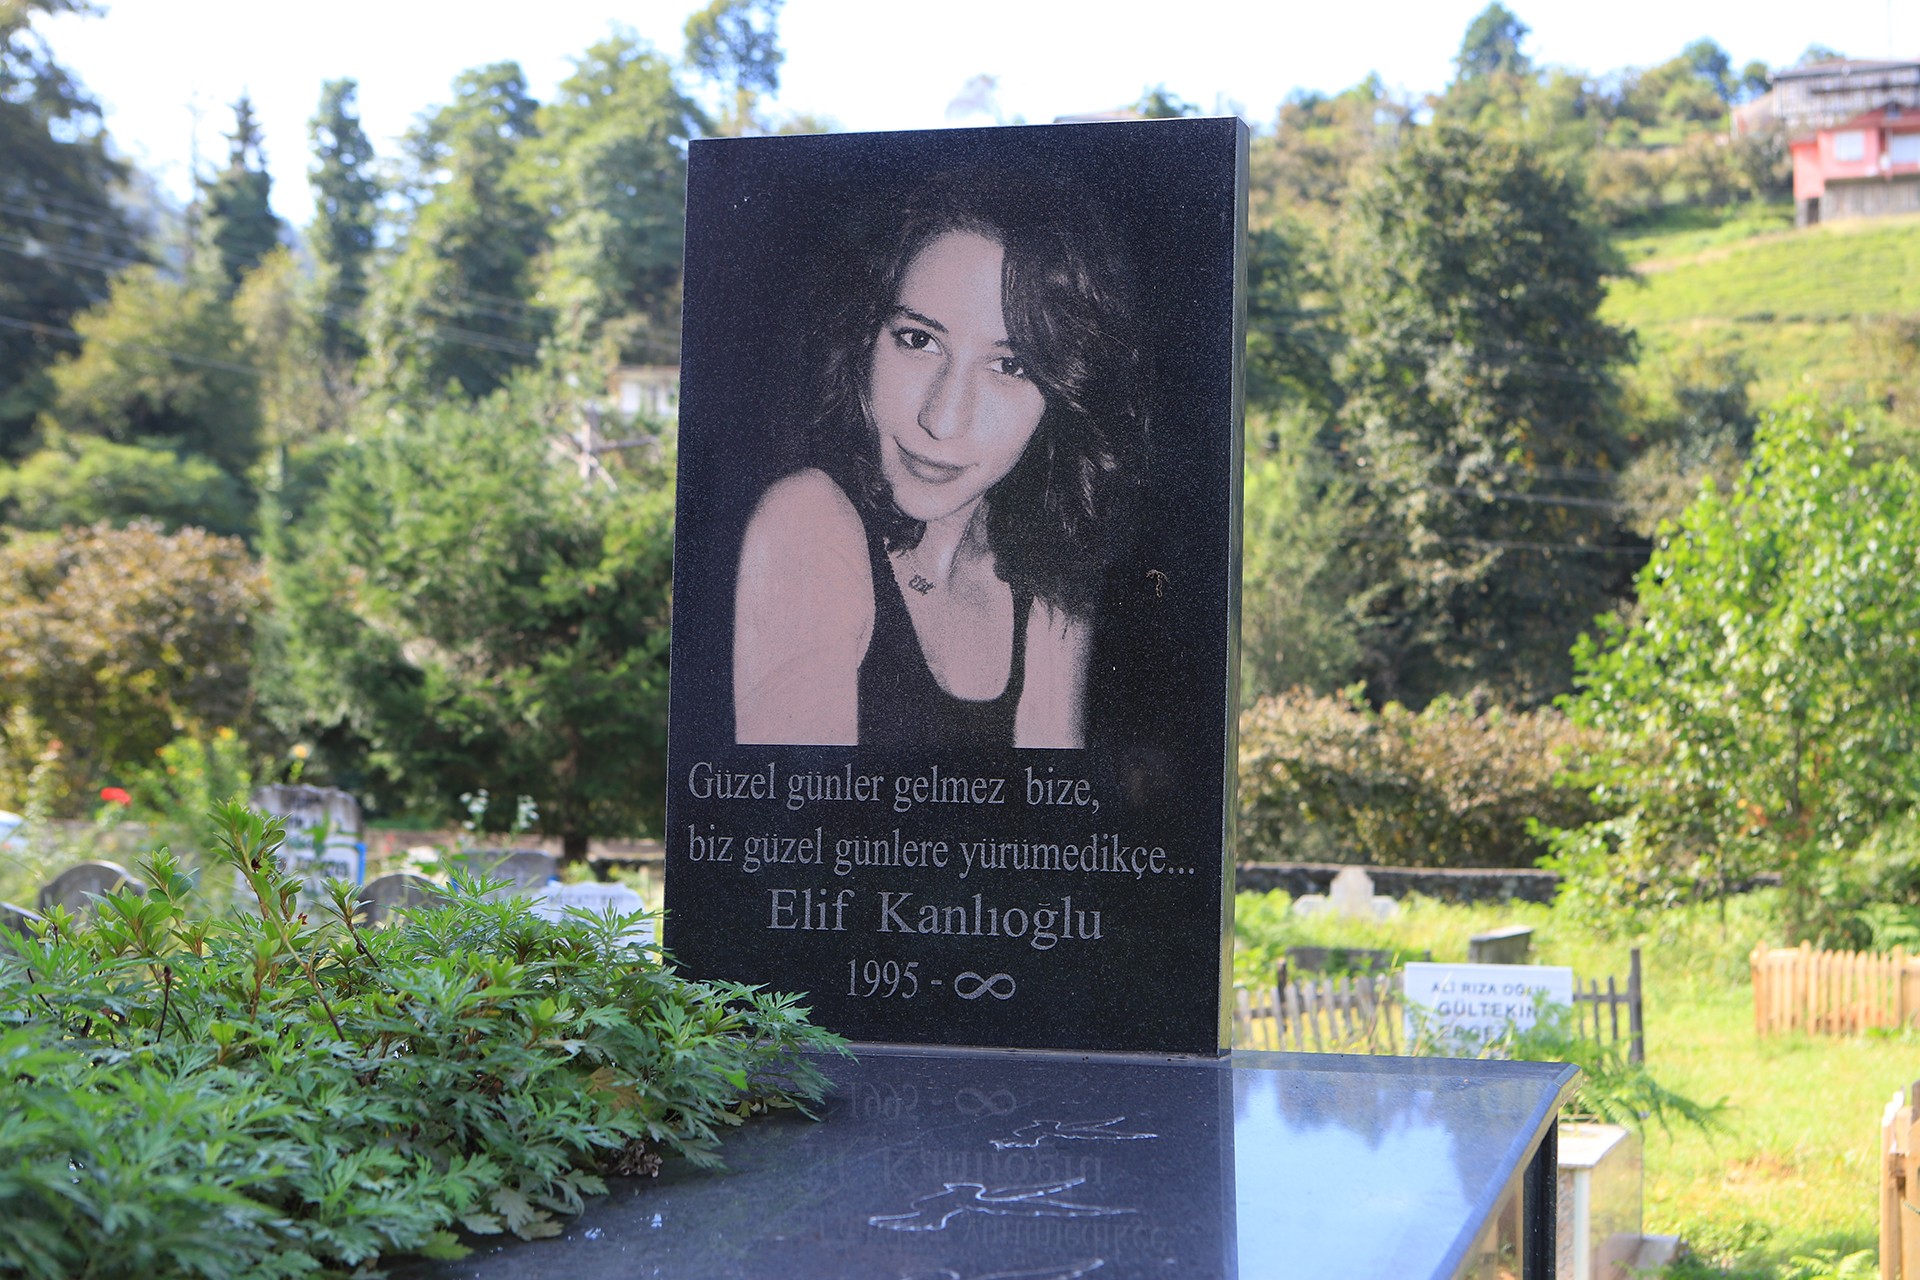 10 Ekim Ankara Katliamı'nda yaşamını yitirenler Emek Gençliği üyesi Elif kanlıoğlu'nun Arhavi'de bulunan mezarı.